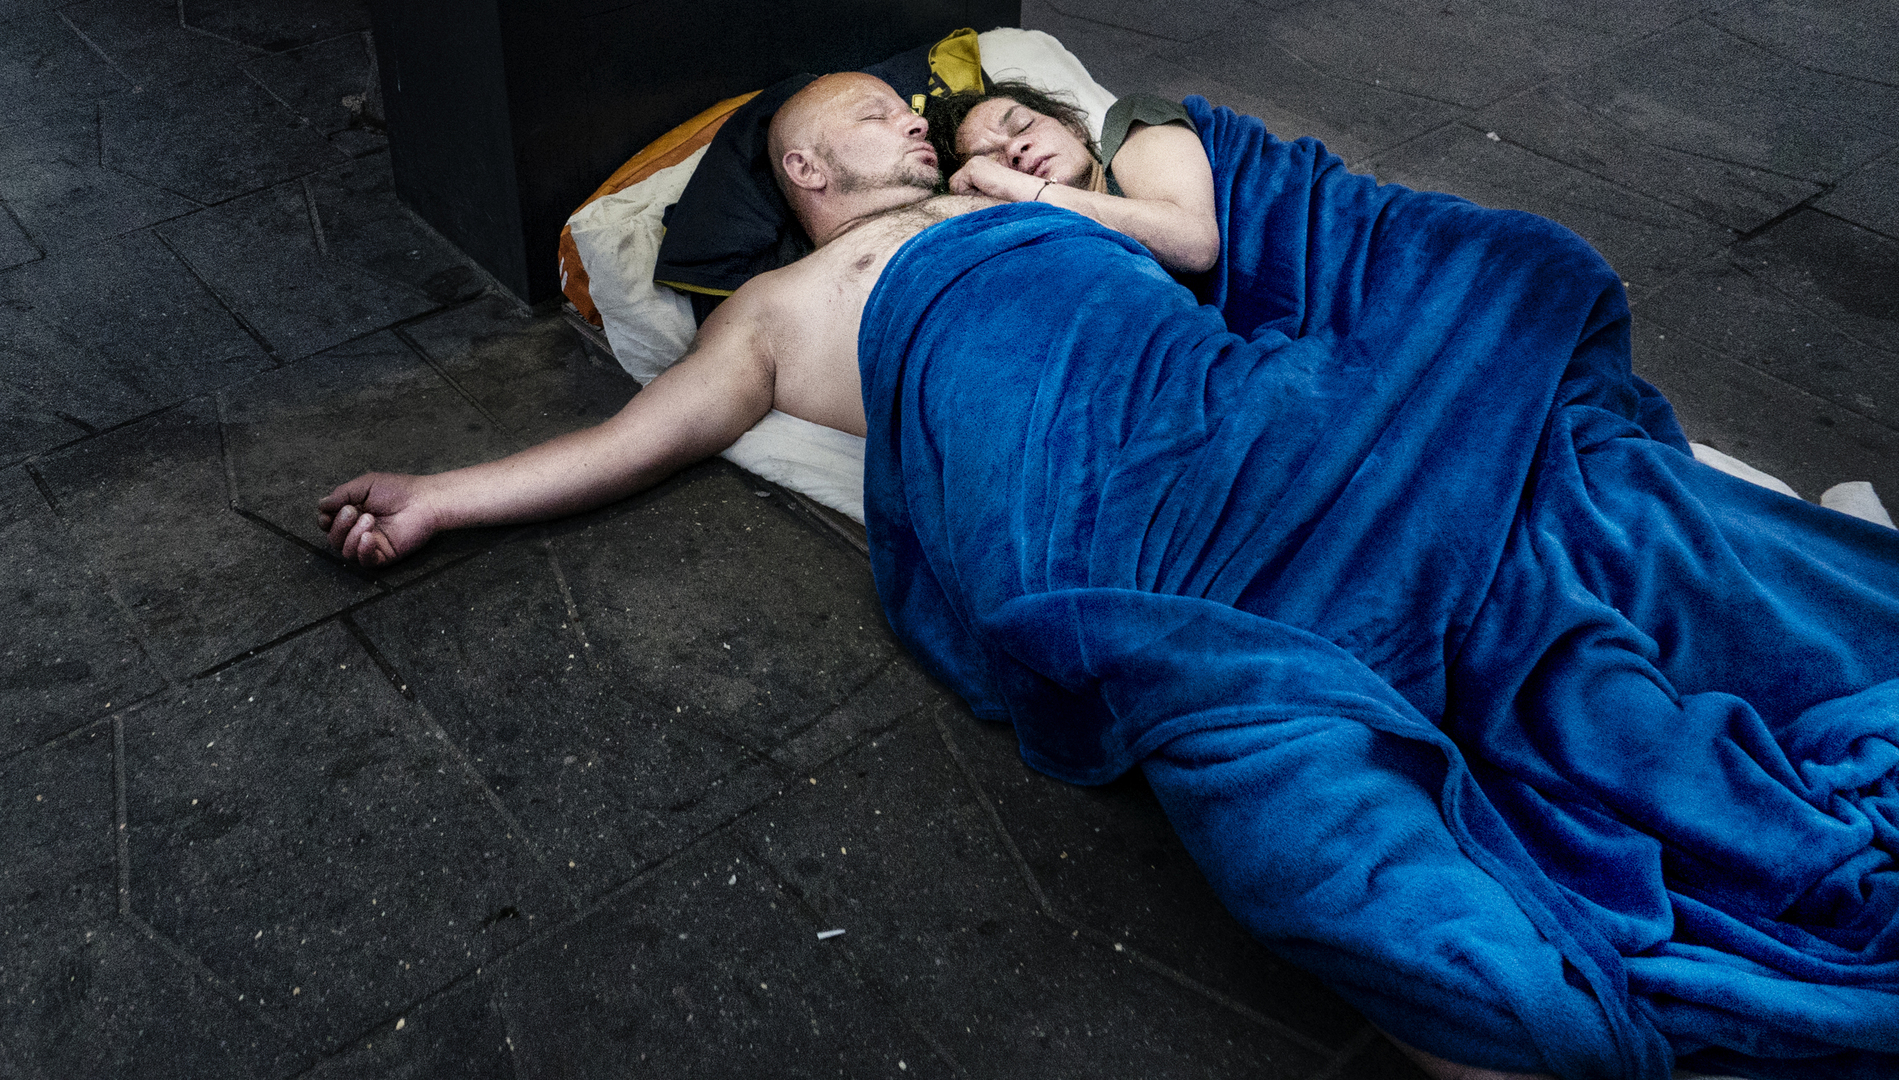 Társadalomábrázolás, dokumentarista fotográfia (egyedi)<br />1. díj: Giampiero Assumma (szabadfoglalkozású): Hajléktalanként élni Budapesten<br /><br />Fotó: Hajléktalan pár a Kálvin téren.